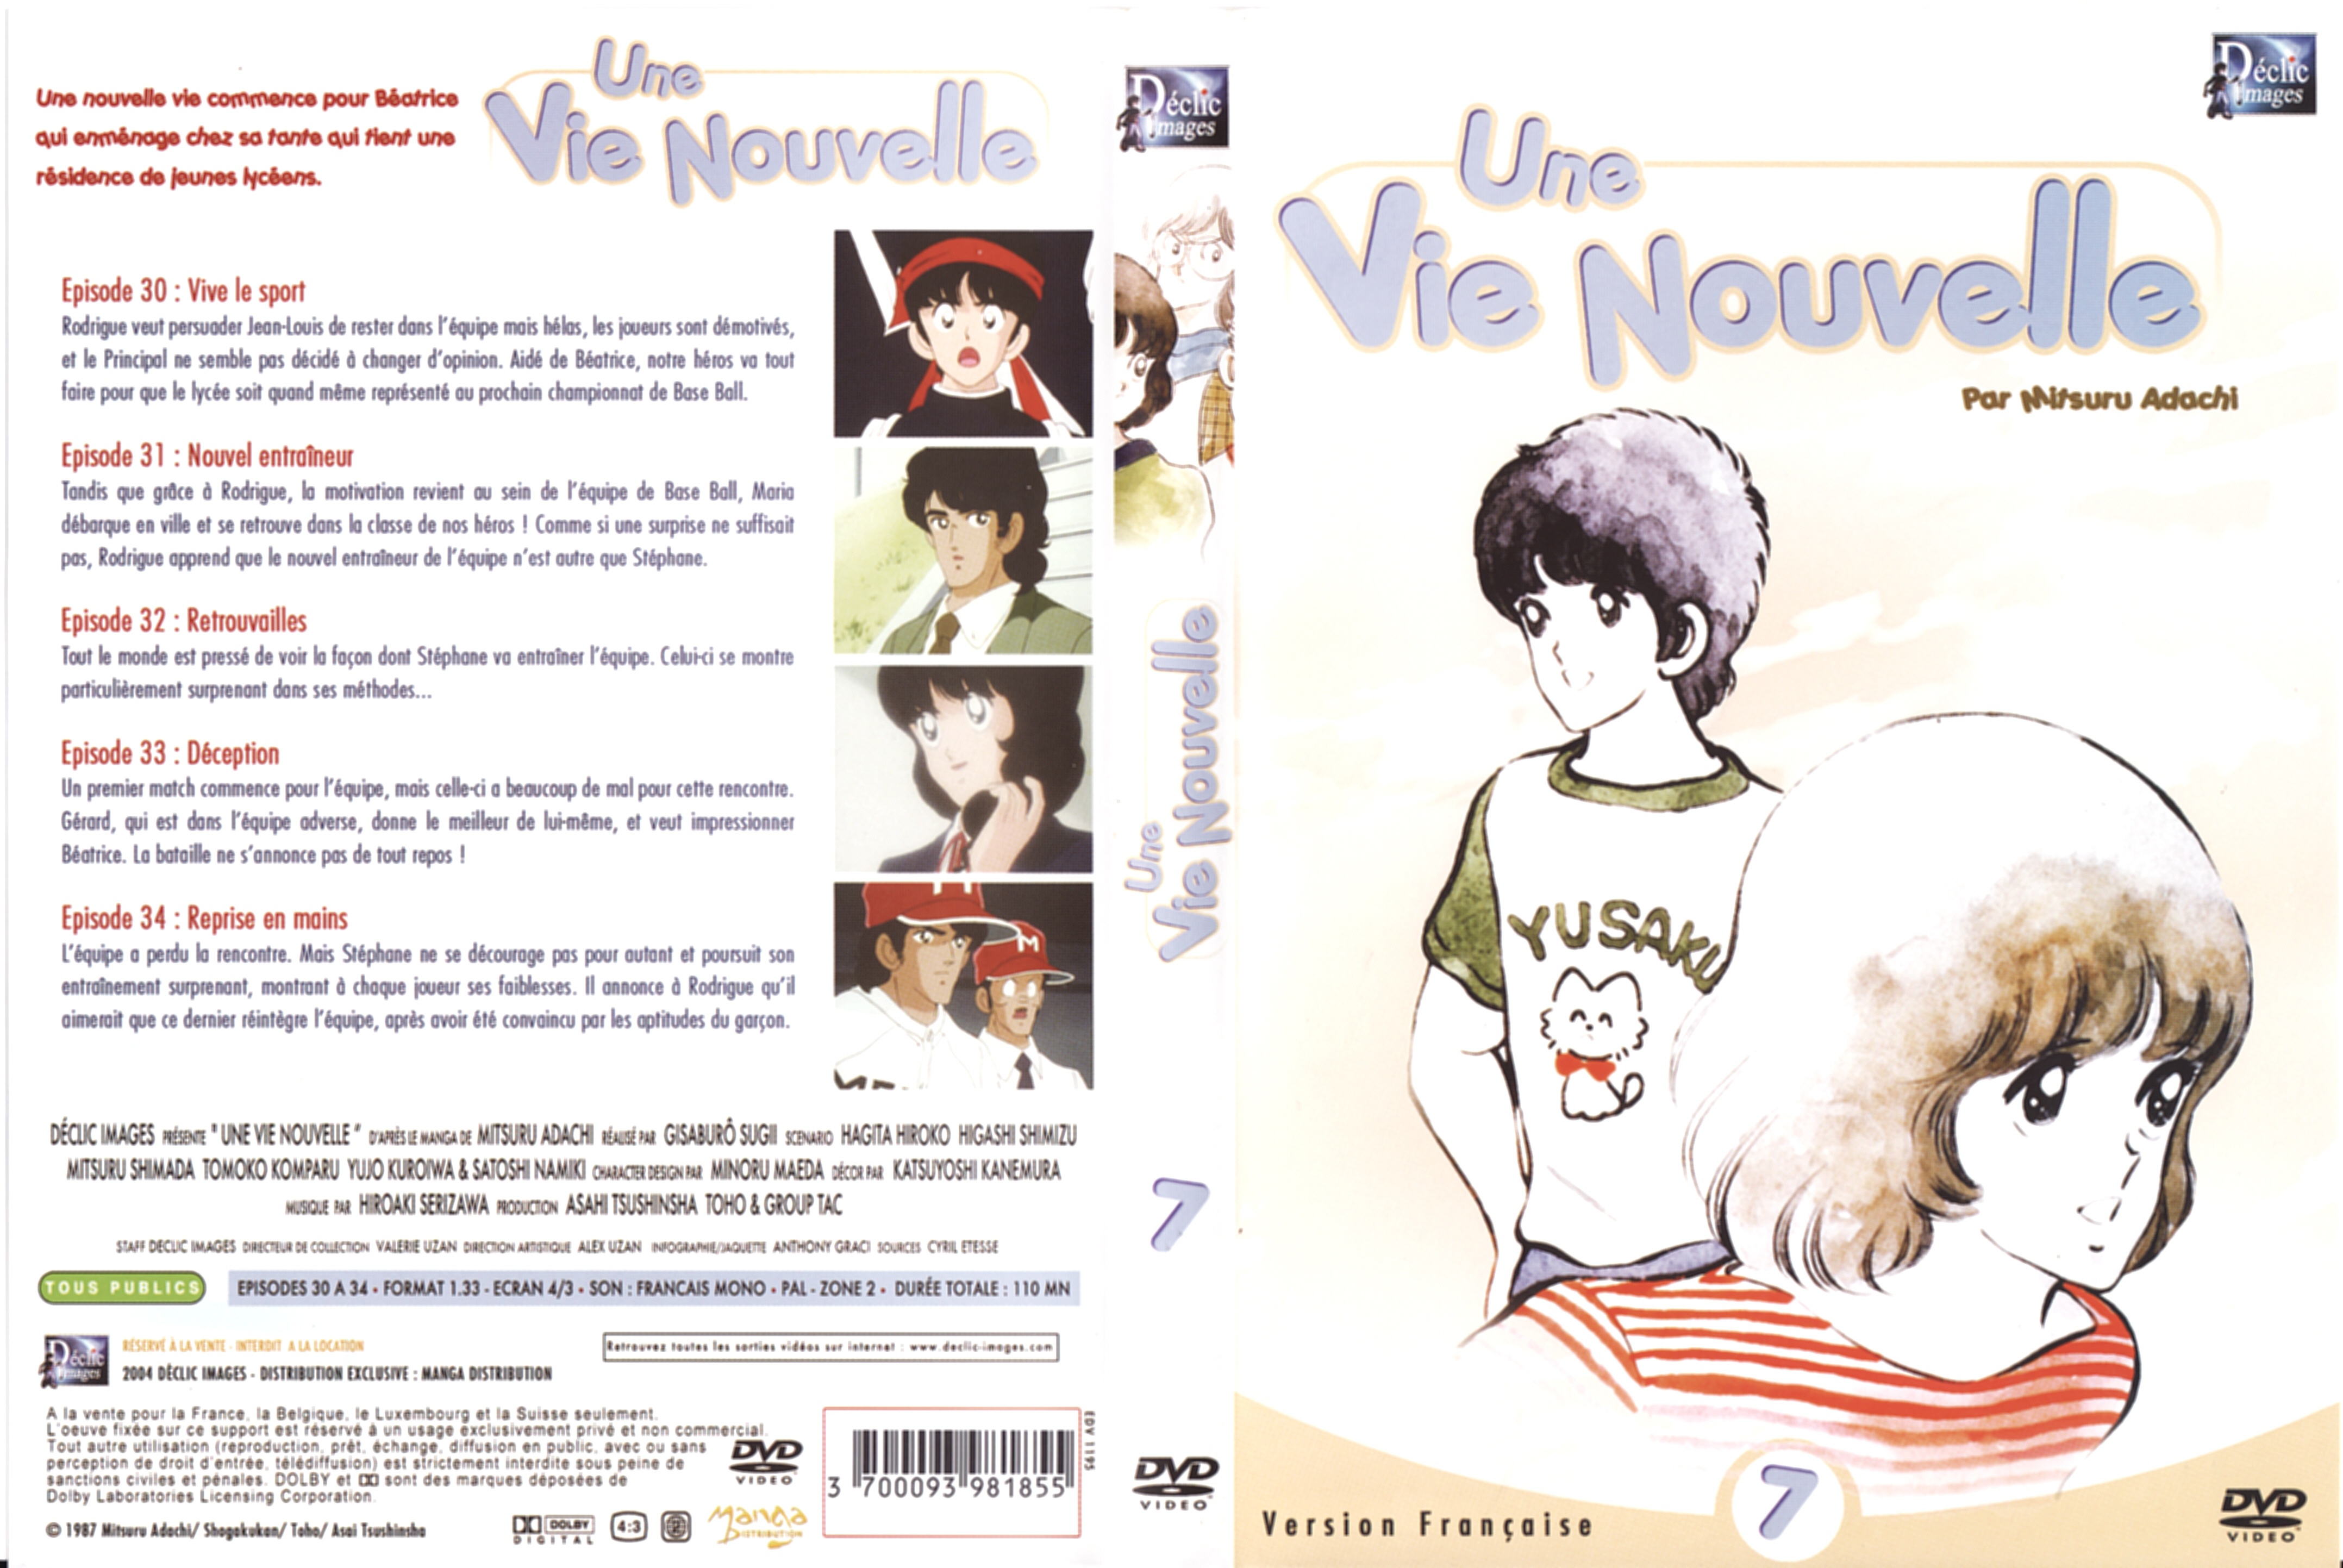 Jaquette DVD Une vie nouvelle vol 07